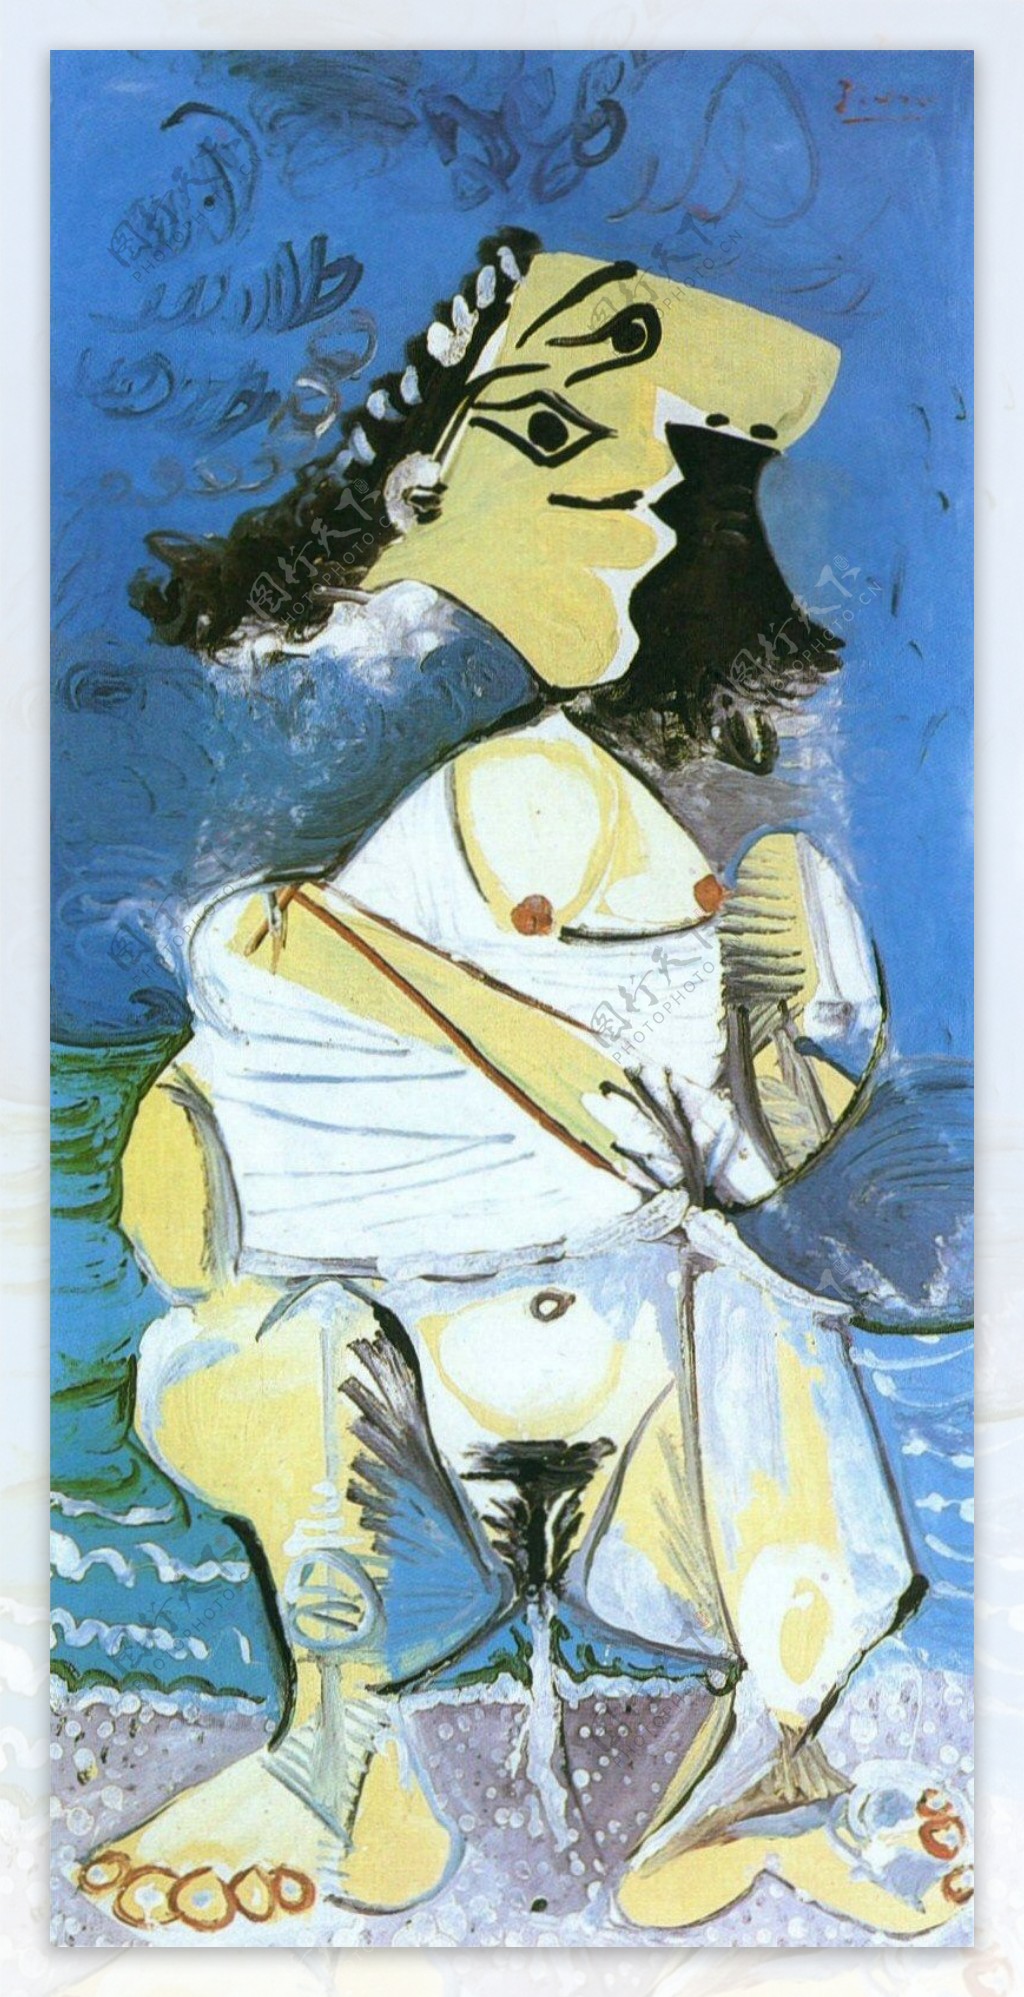 1965Lapisseuse西班牙画家巴勃罗毕加索抽象油画人物人体油画装饰画